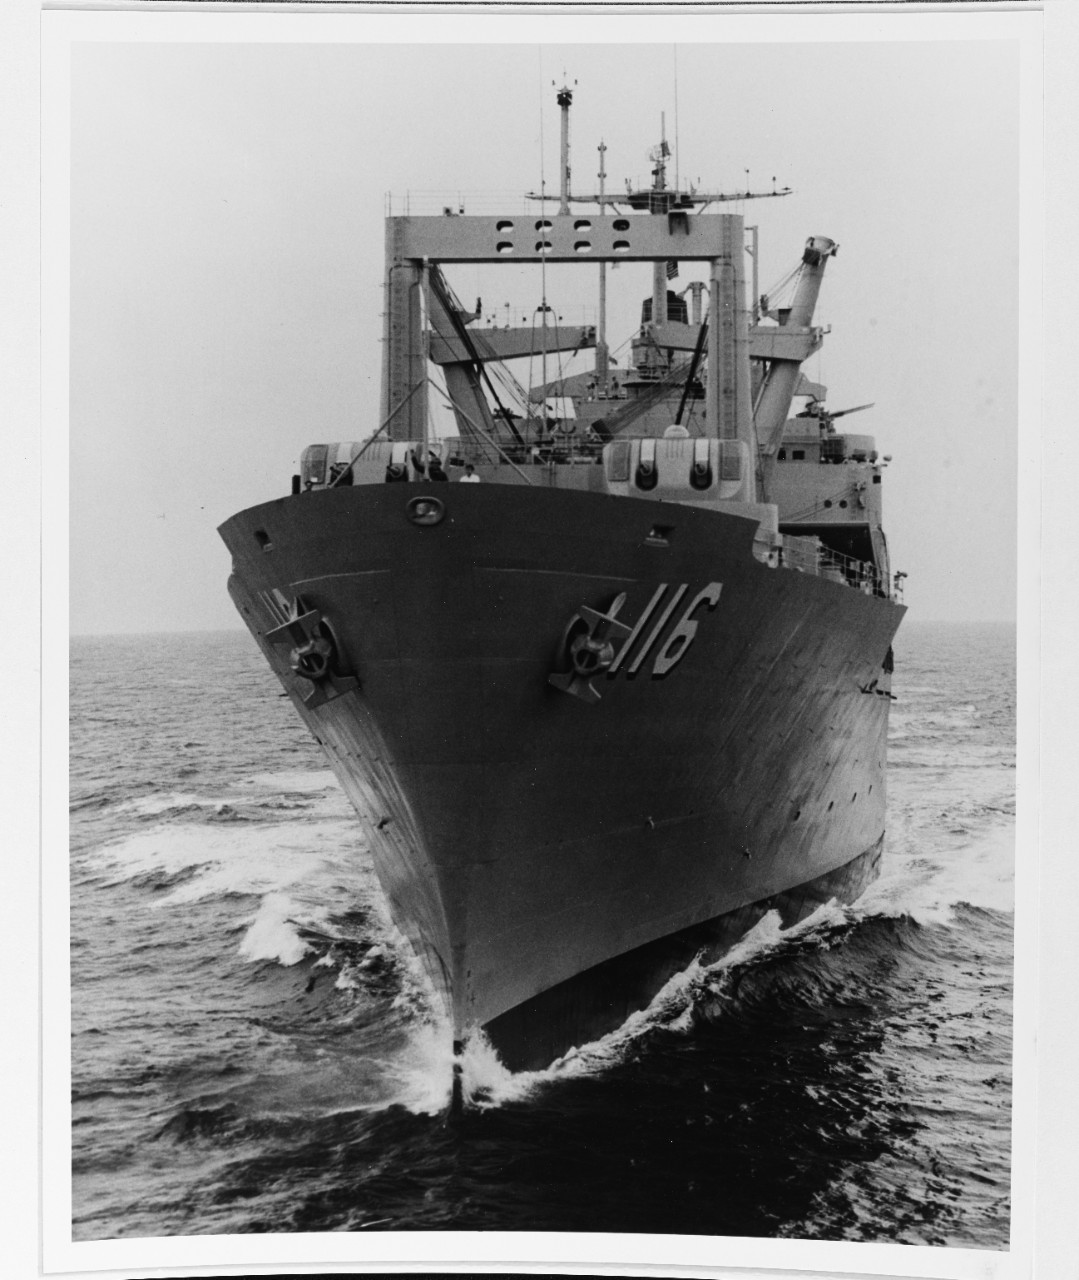 USS ST. LOUIS (LKA-116)